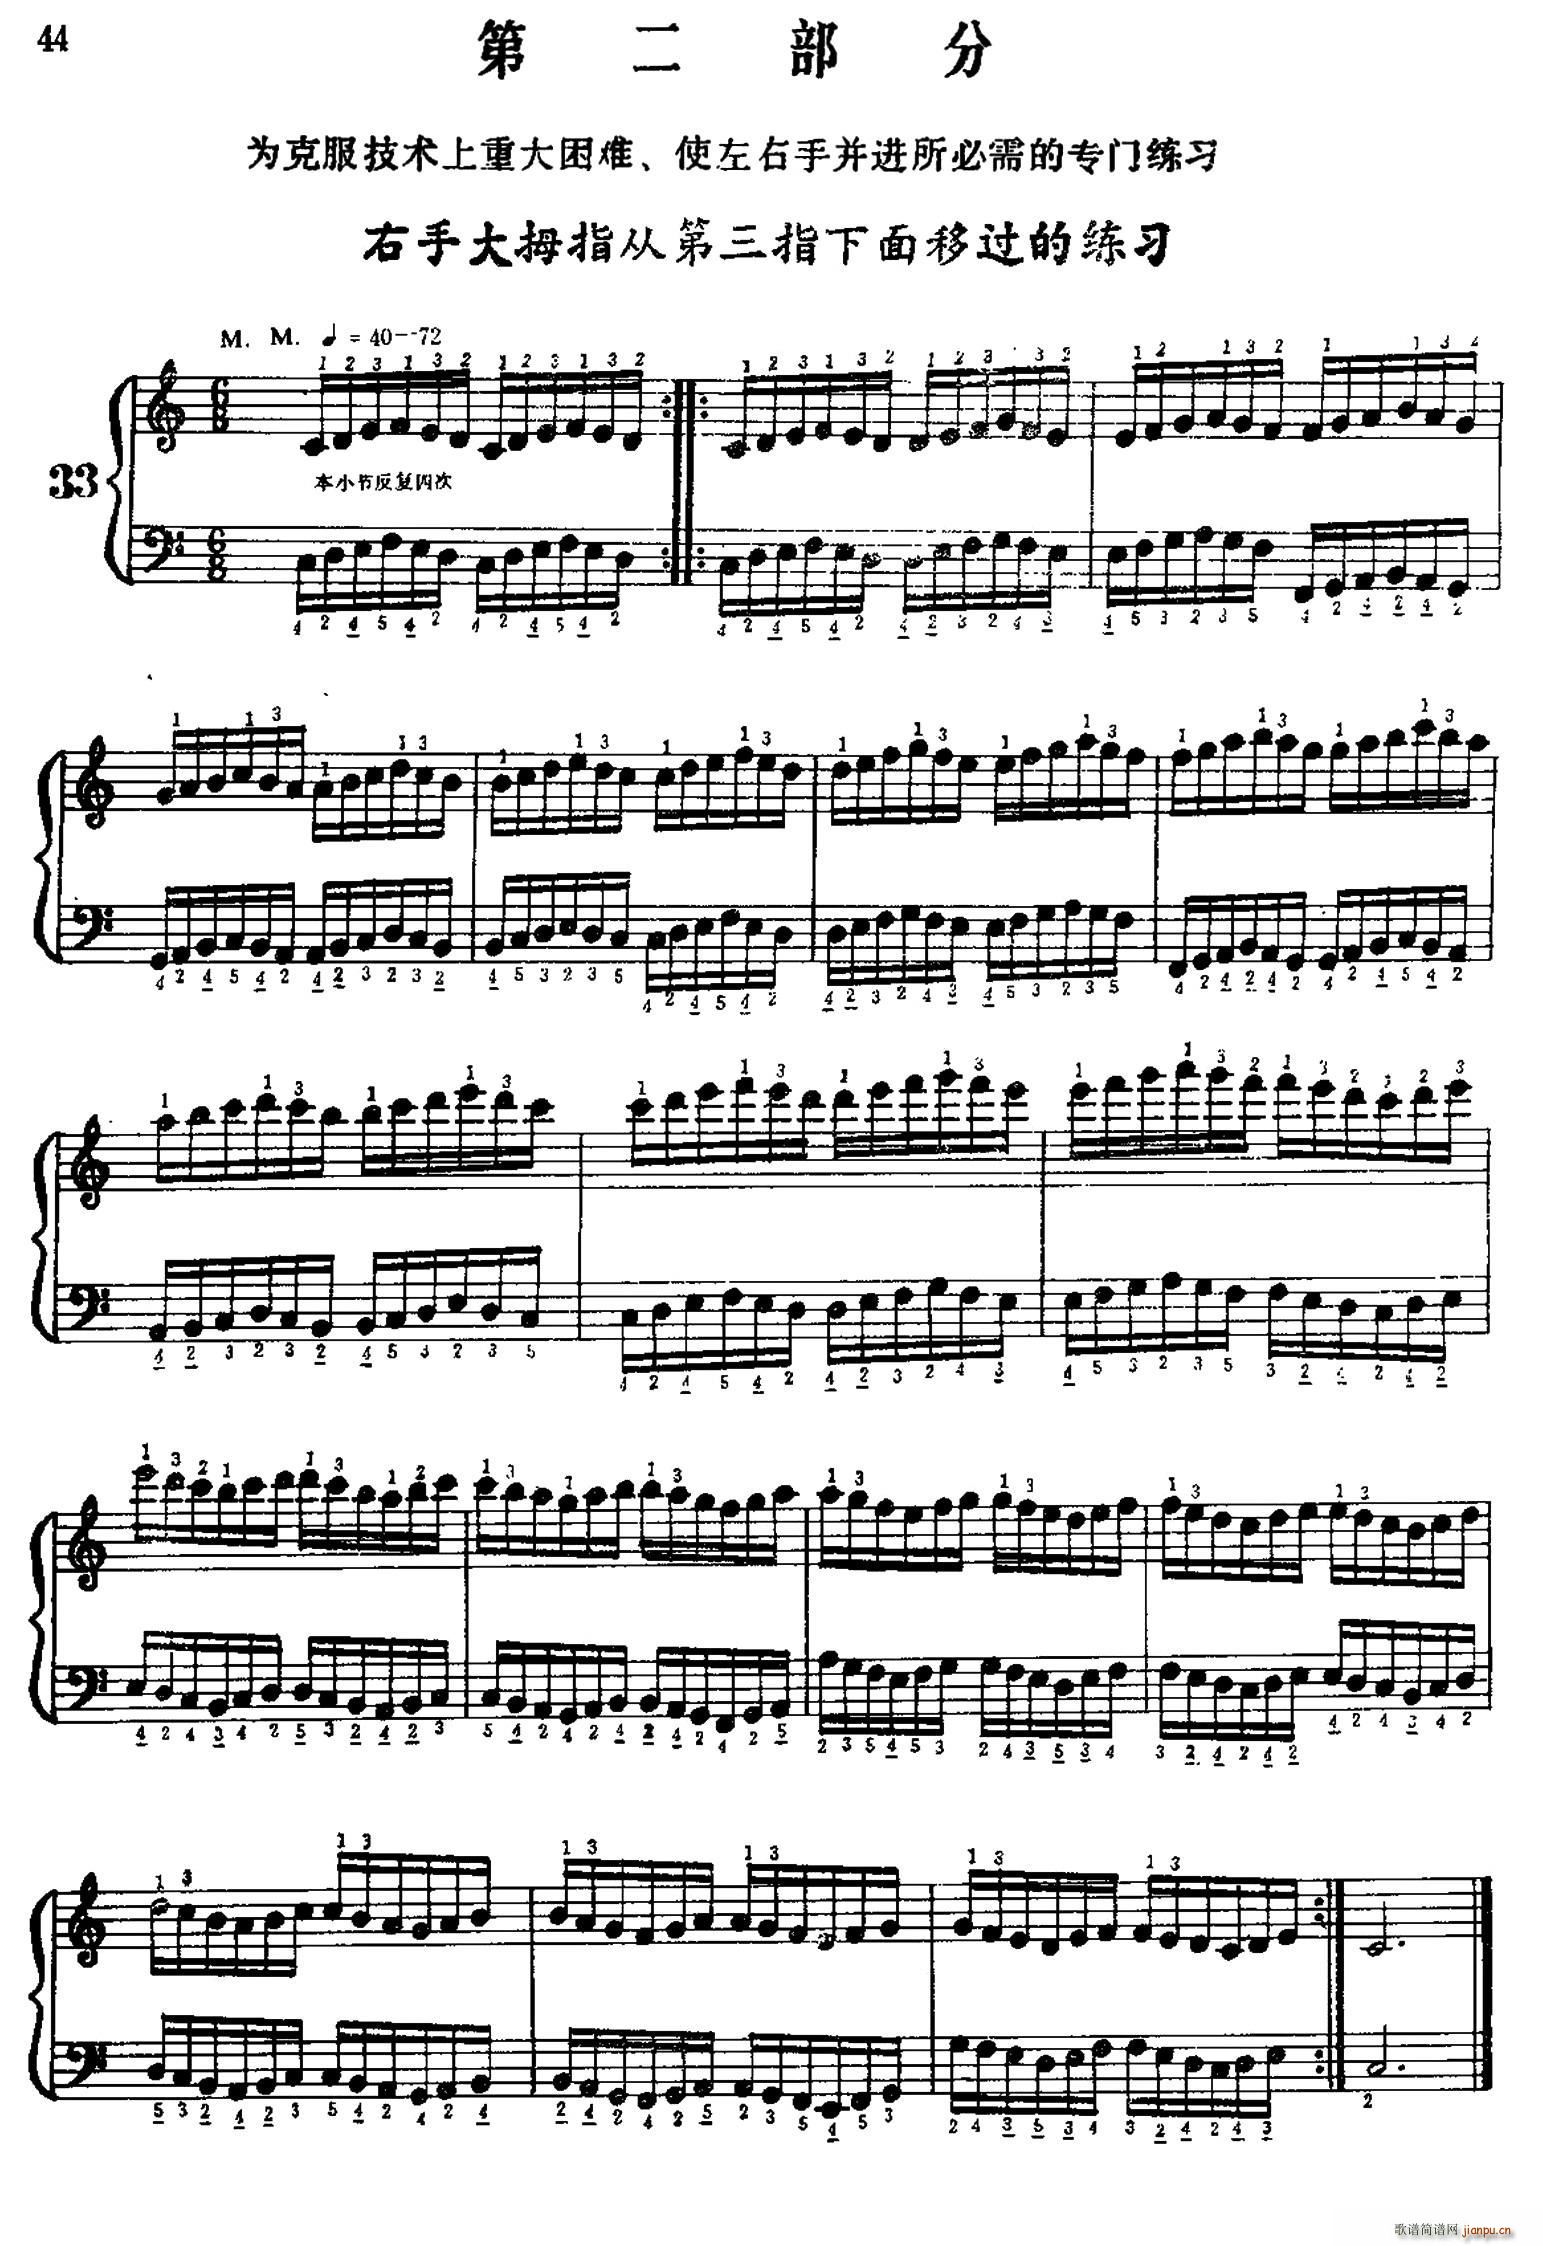 手风琴手指练习 第二部分 右手大拇指从第三指下面移过的练习(手风琴谱)1